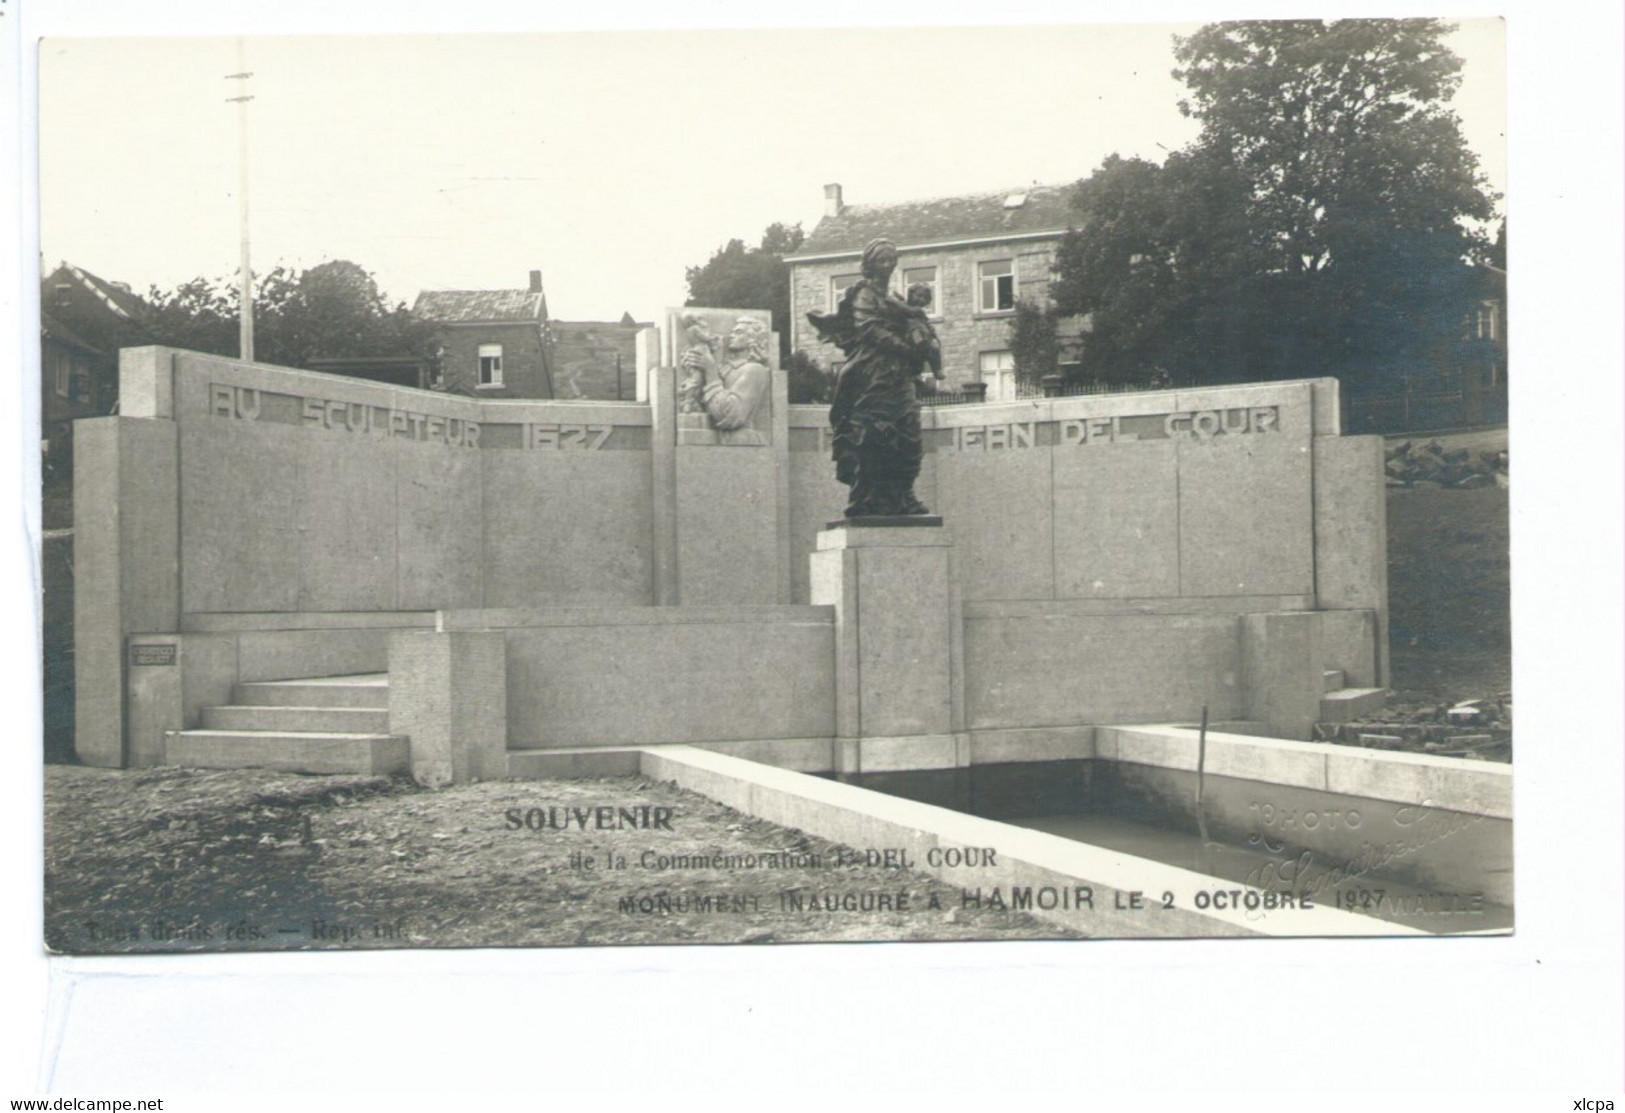 Hamoir Souvenir De La Commémoration J Del Cour Monument - Hamoir